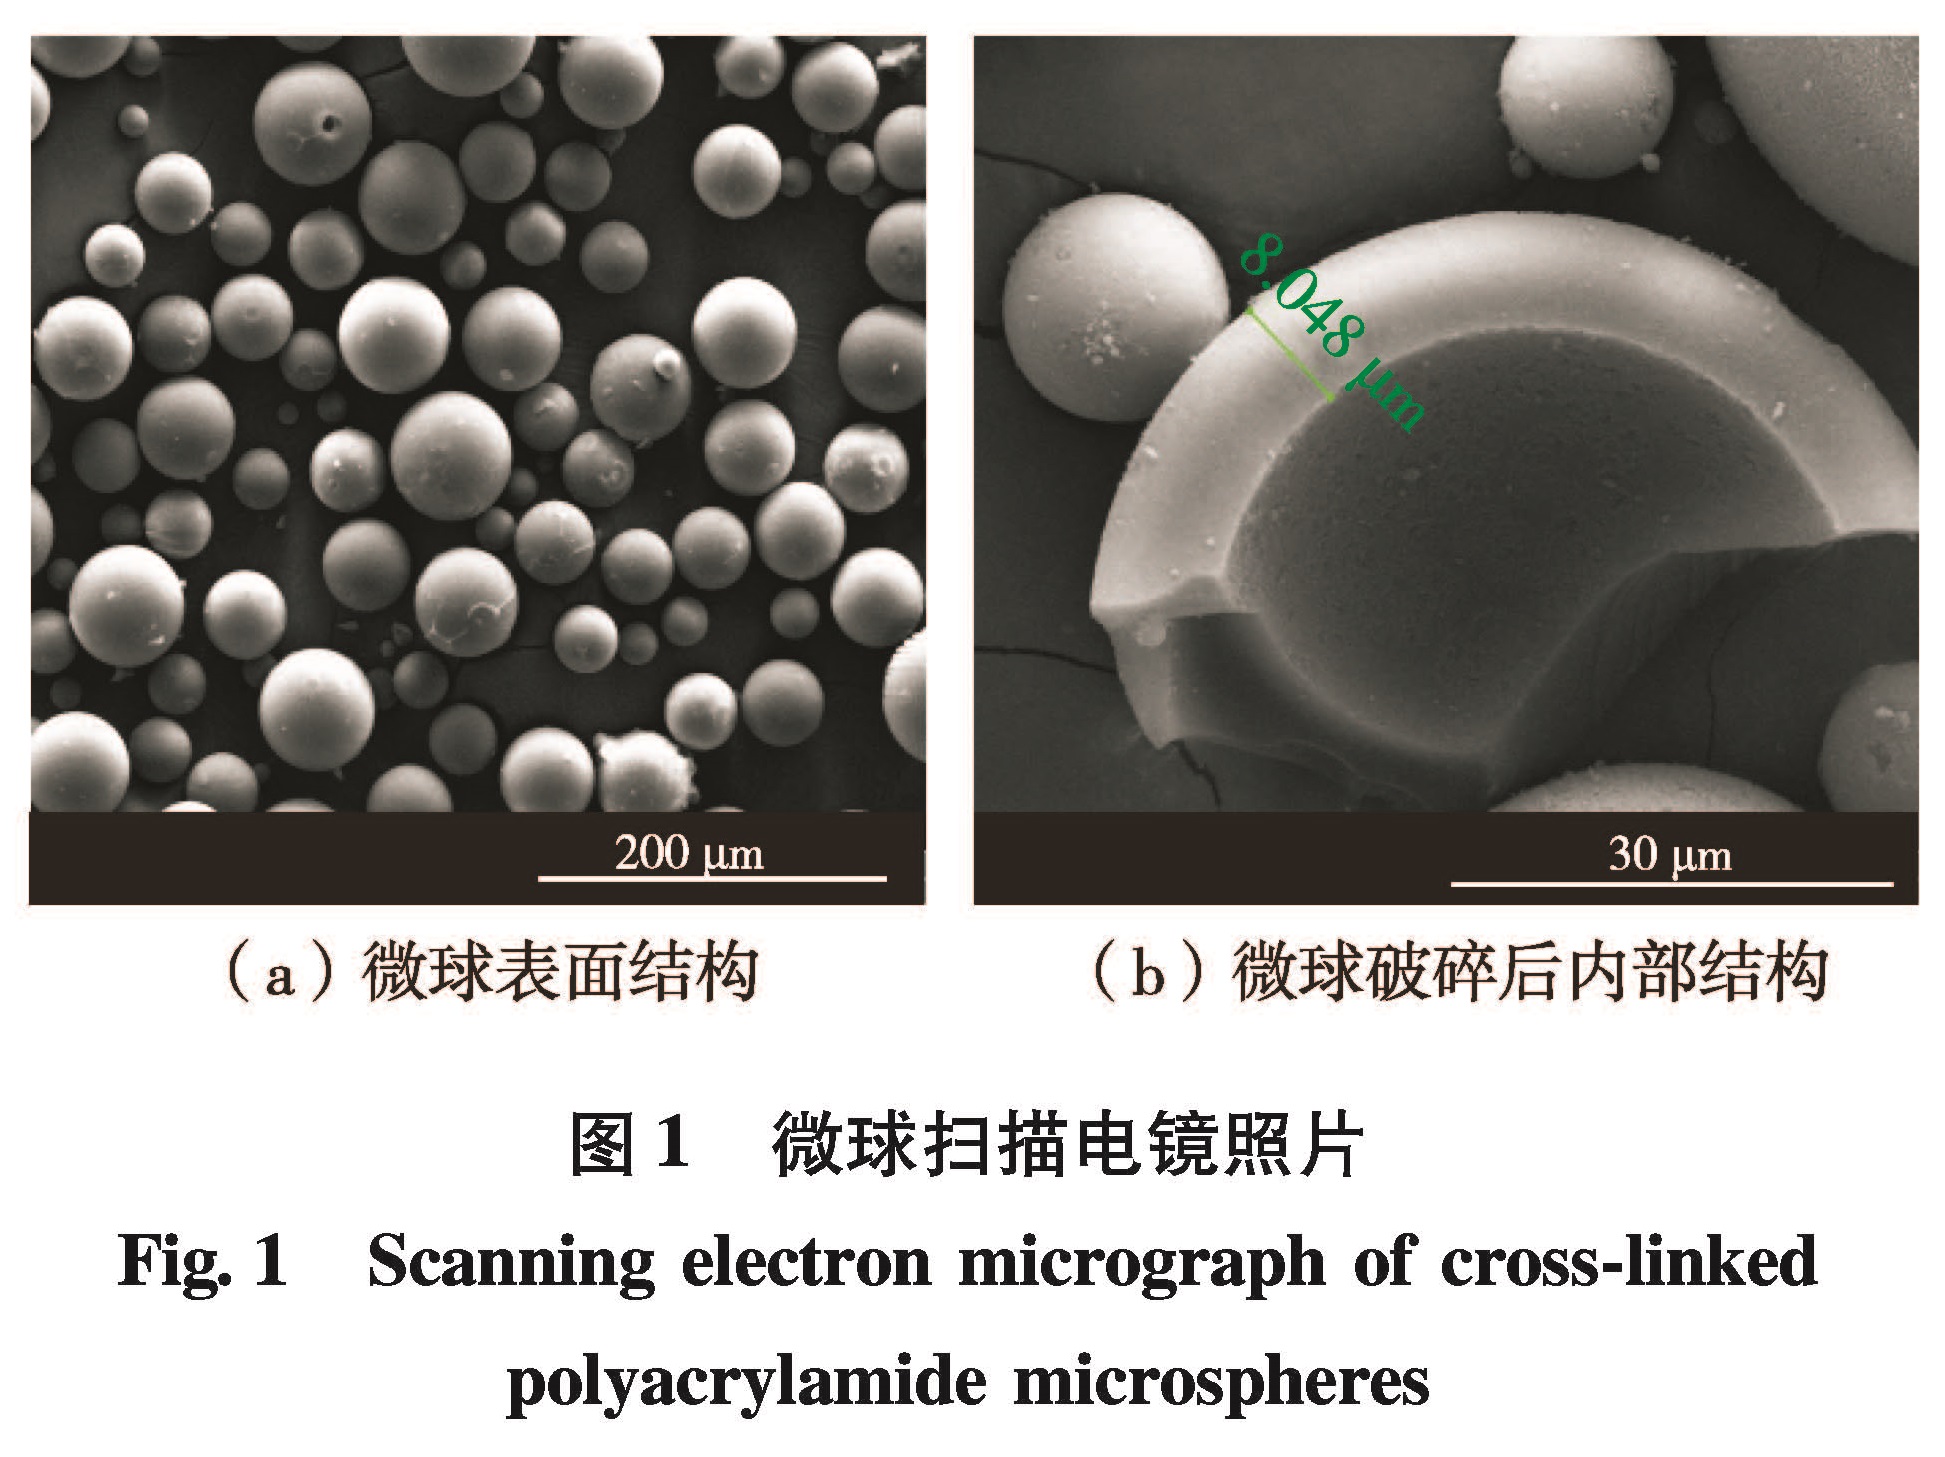 图1 微球扫描电镜照片<br/>Fig.1 Scanning electron micrograph of cross-linked polyacrylamide microspheres